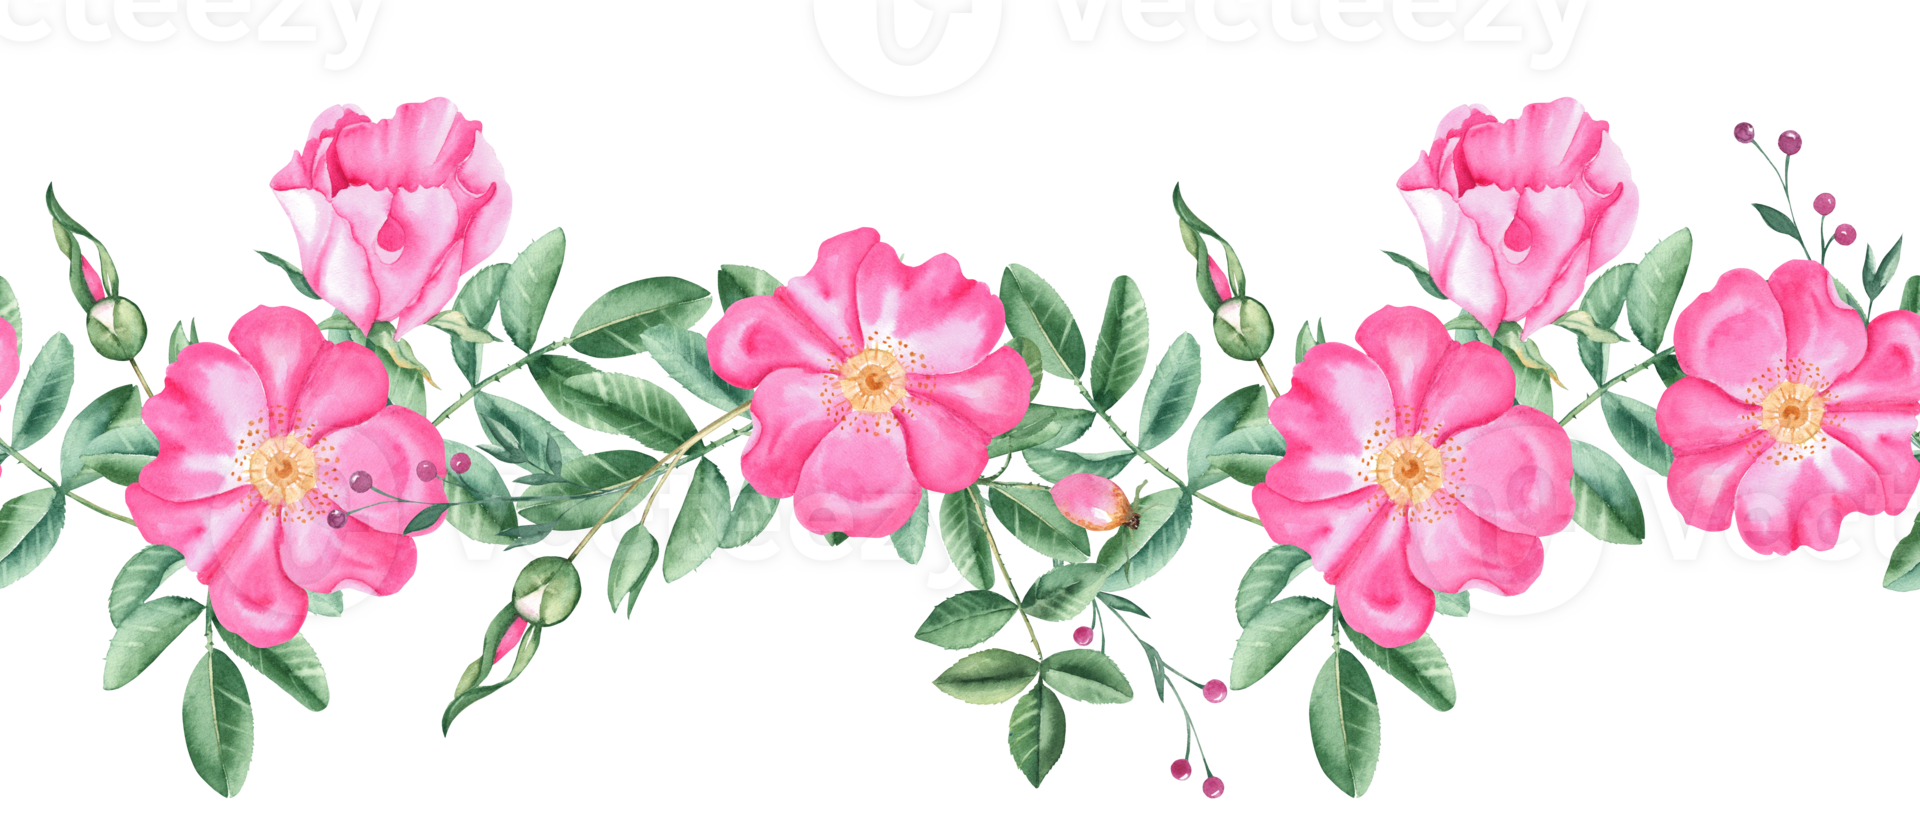 roos heup horizontaal waterverf naadloos grens patroon. hand- getrokken botanisch illustratie. hond roos bloemen, knoppen, takken en bessen. kan worden gebruikt voor kleding stof, textiel, verpakking prints png